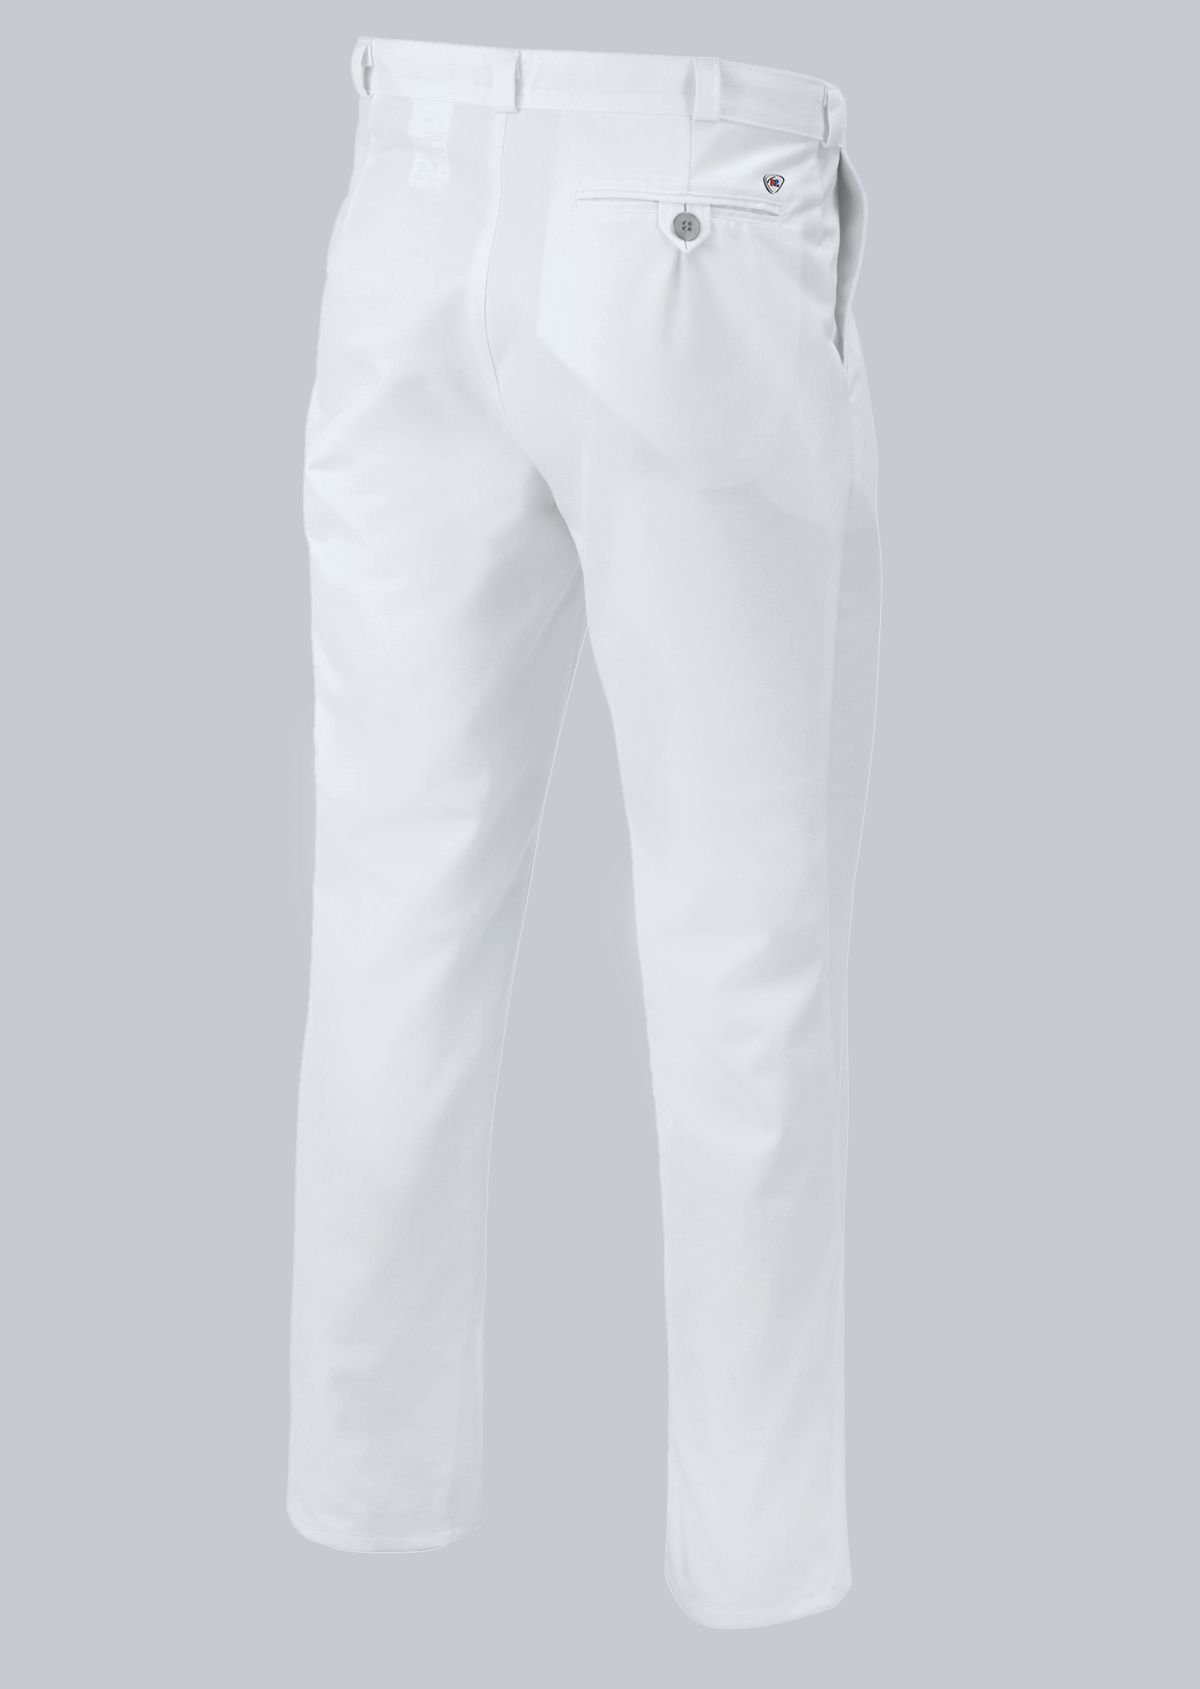 BP® Men's trousers